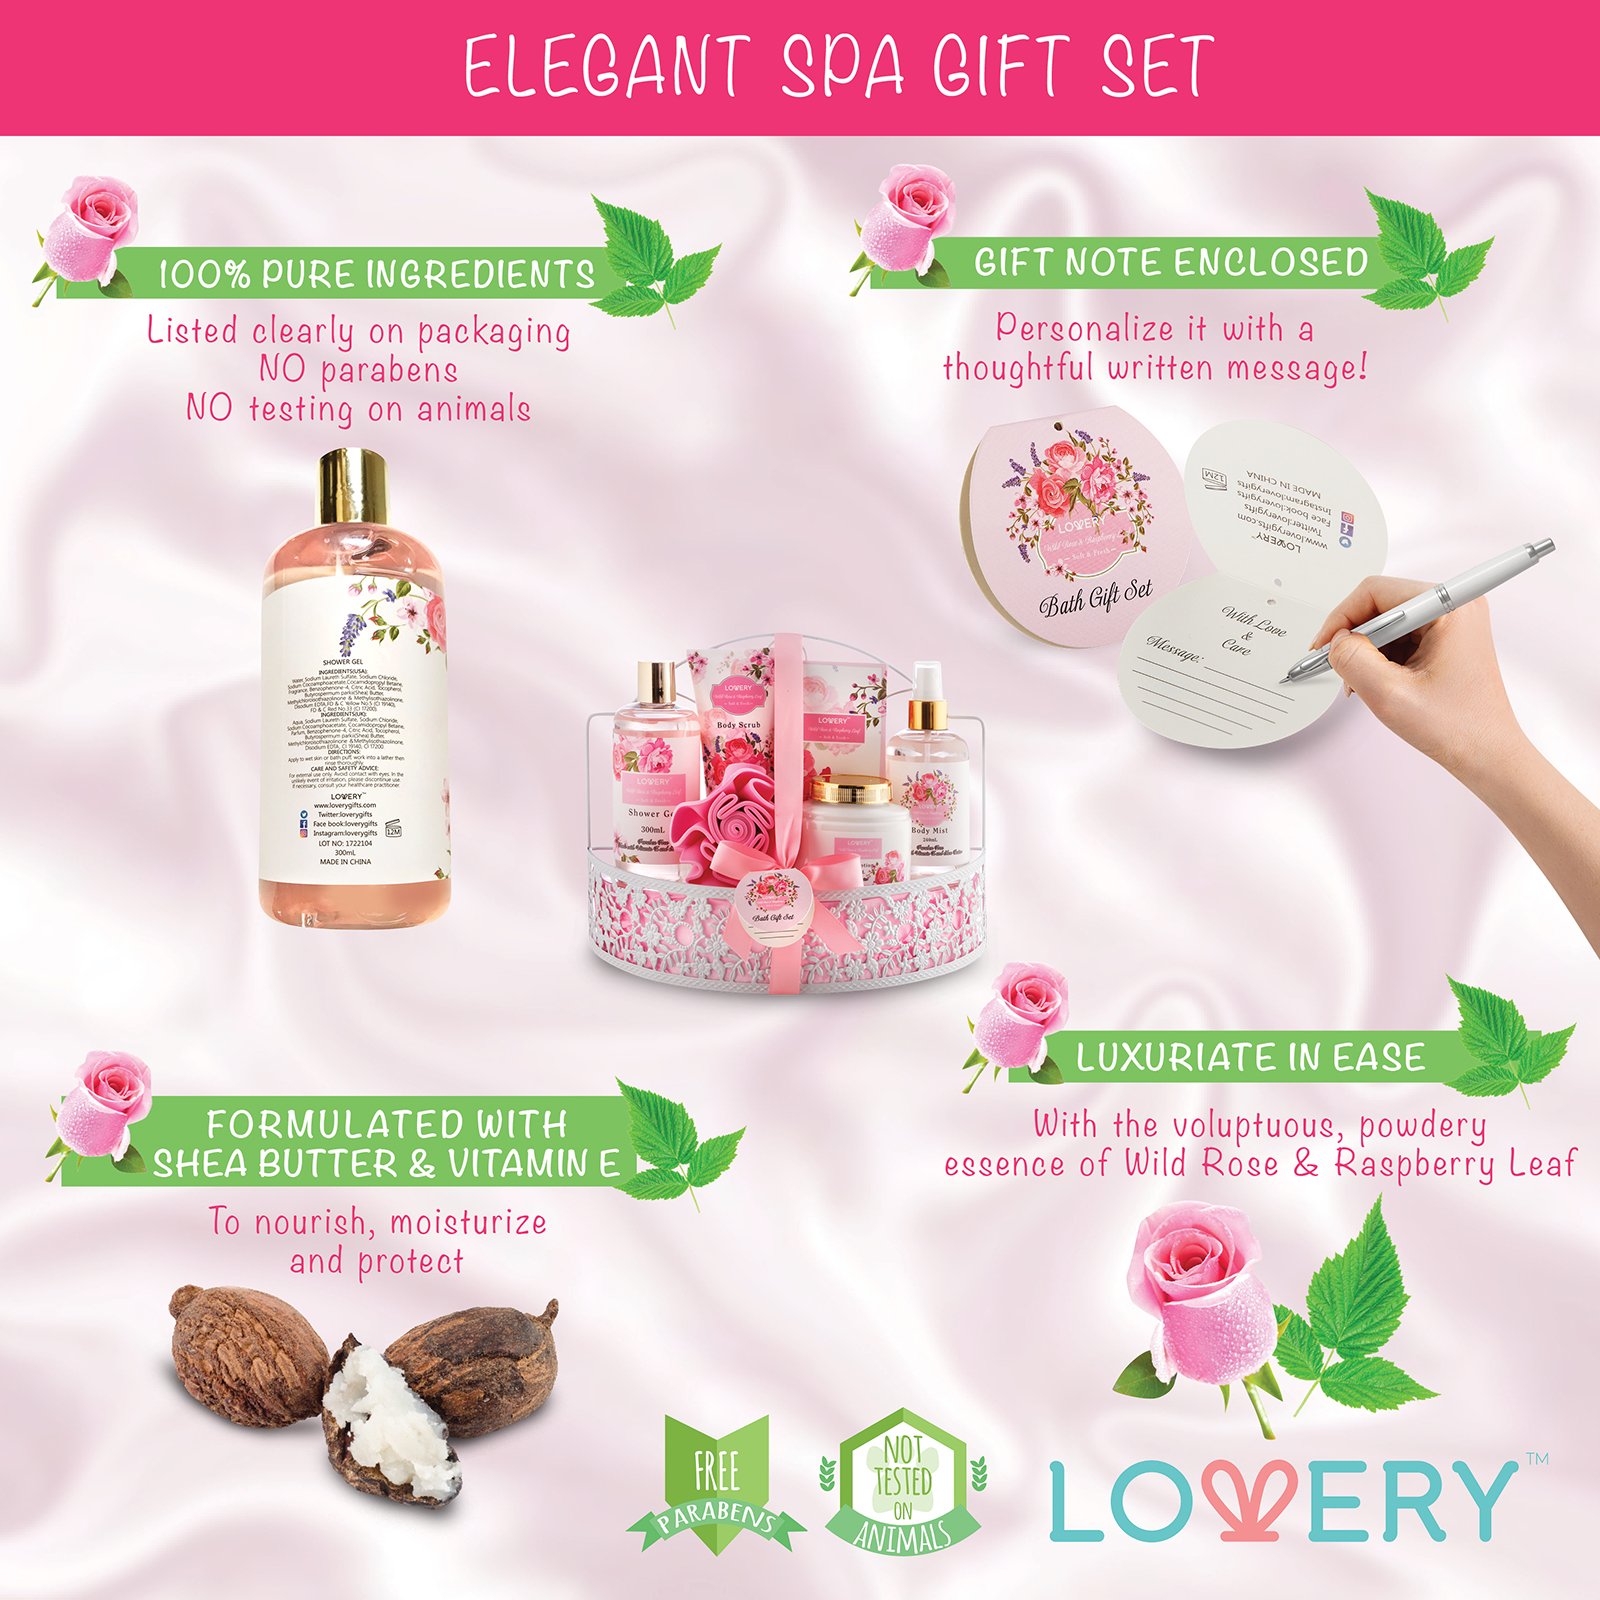 Home Spa Gift Basket - Wild Rose & Raspberry Leaf Scent - 7pc Bath & Body Set for Men and Women - Shower Gel, Body Lotion, Body Scrub, Bath Salt, Body Mist, Bath Puff & Shower Caddy